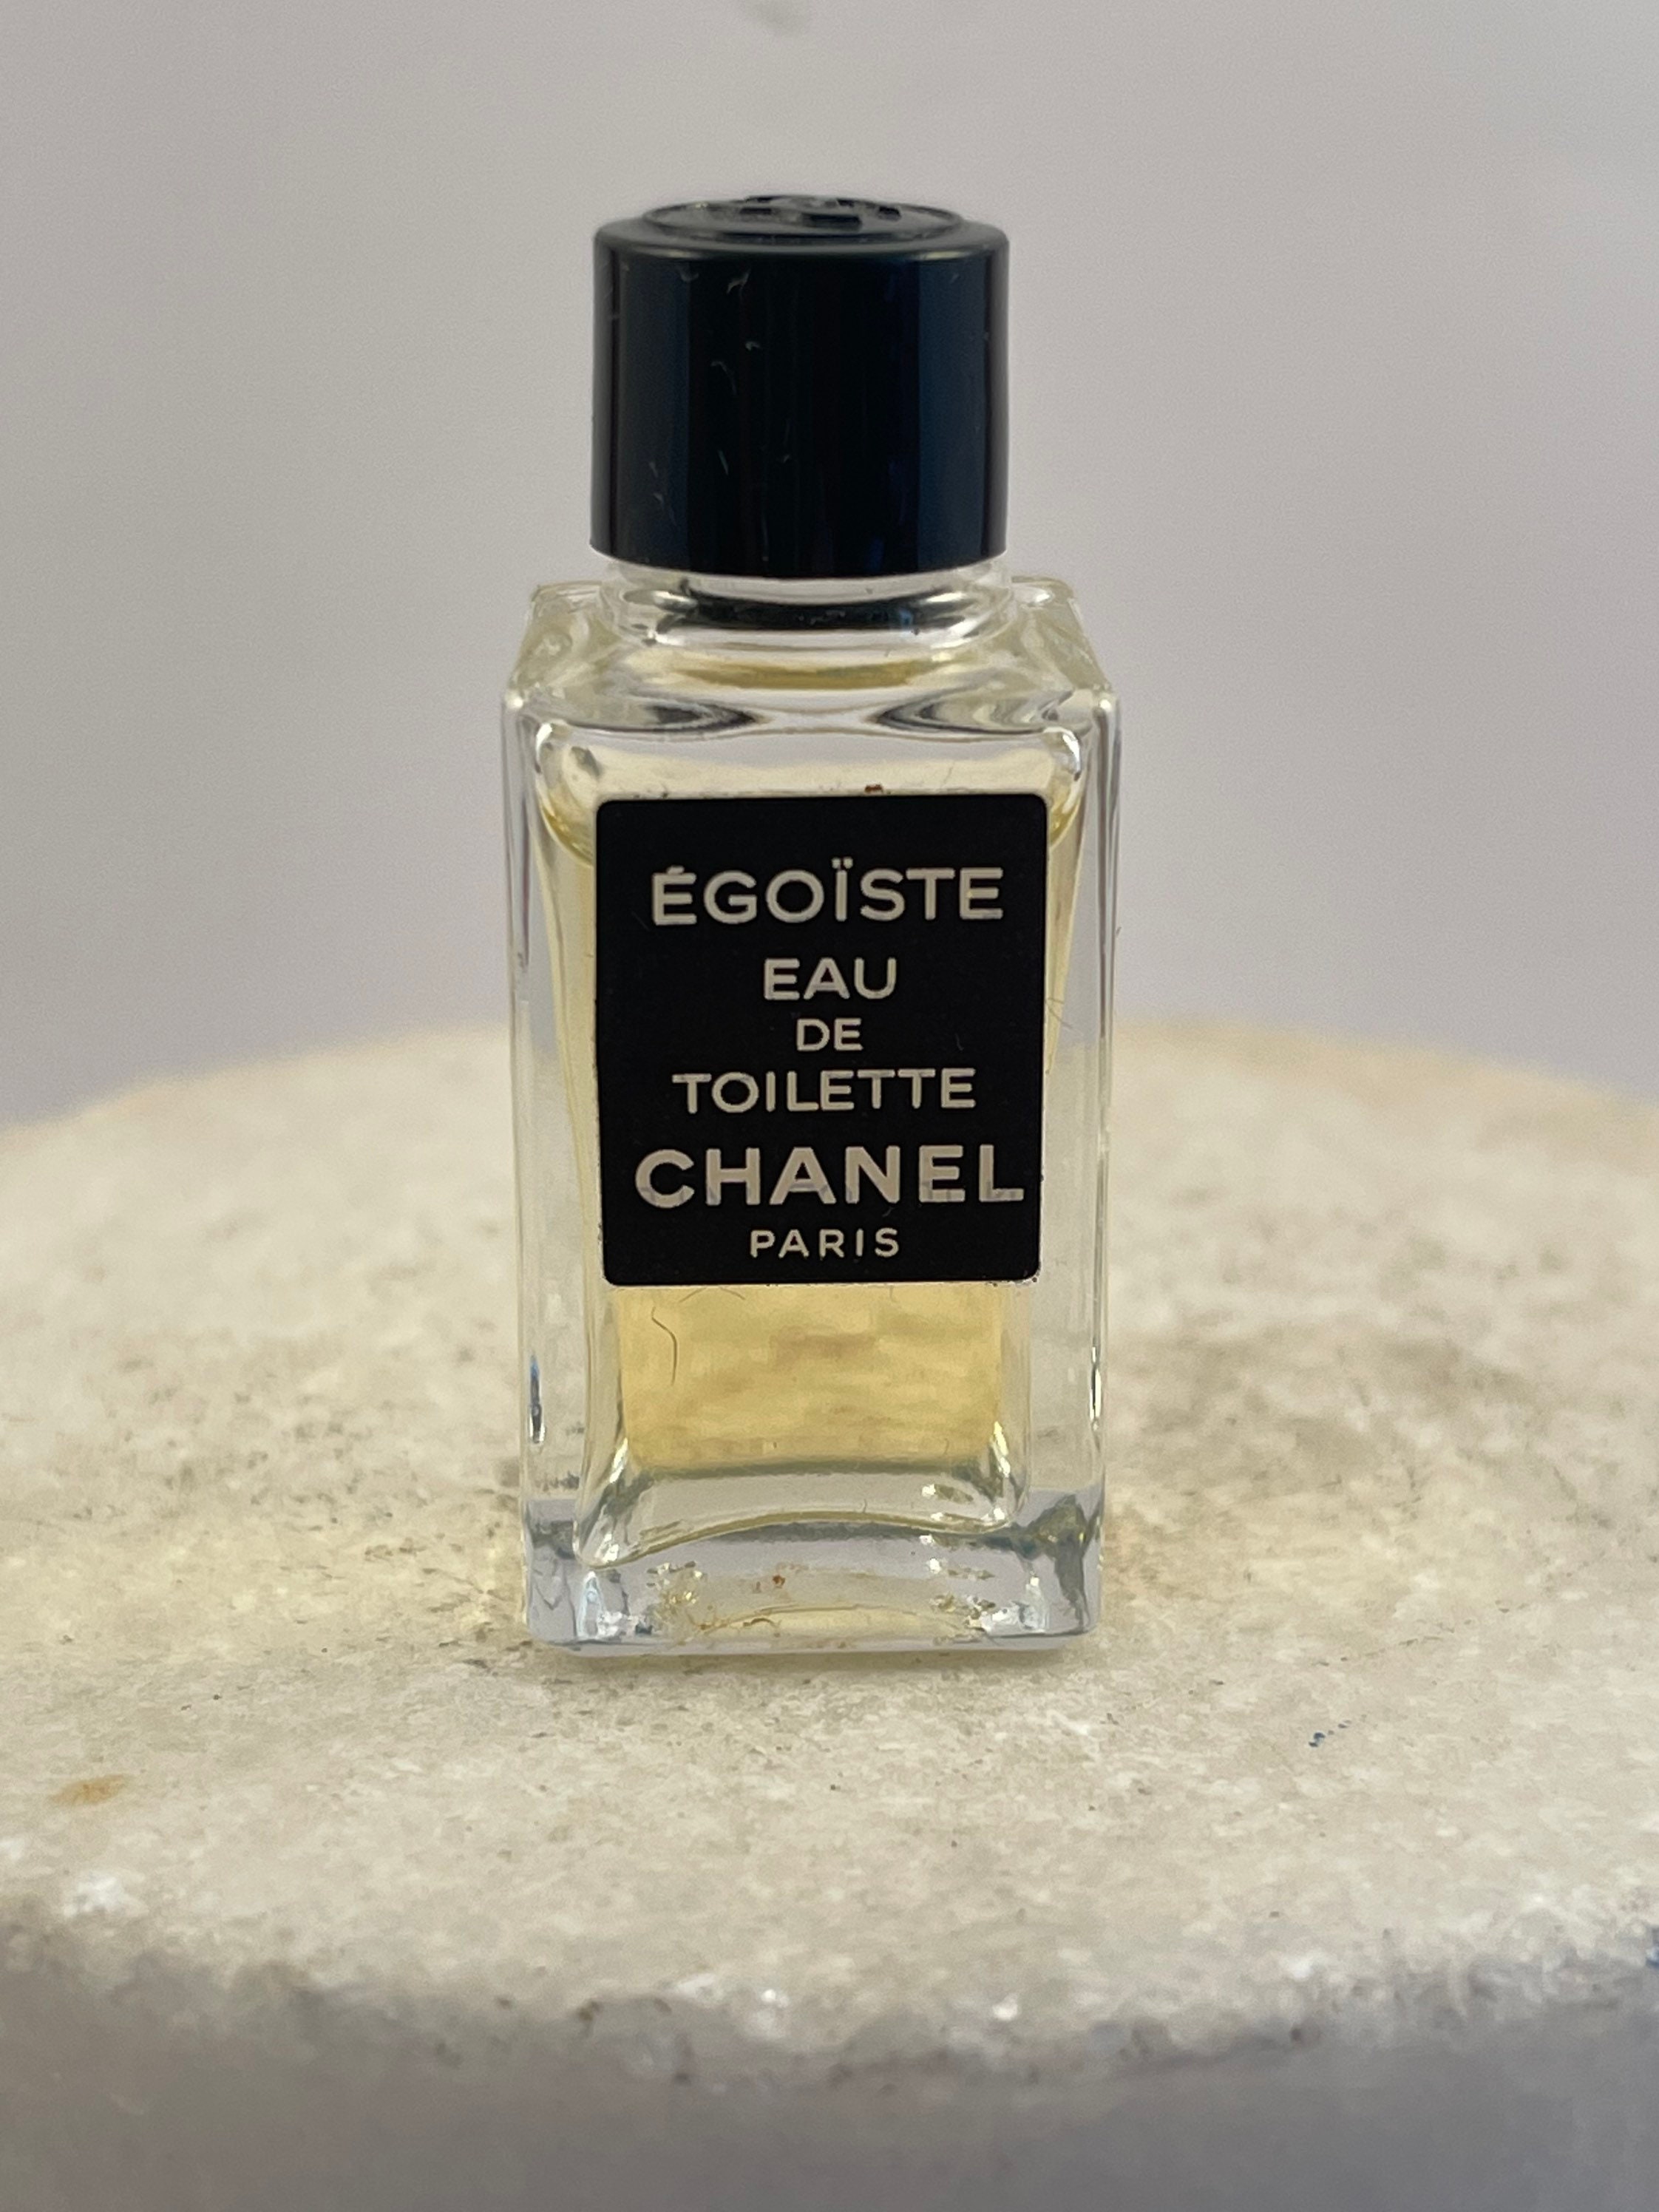 Egoiste Eau de Toilette Spray by Chanel